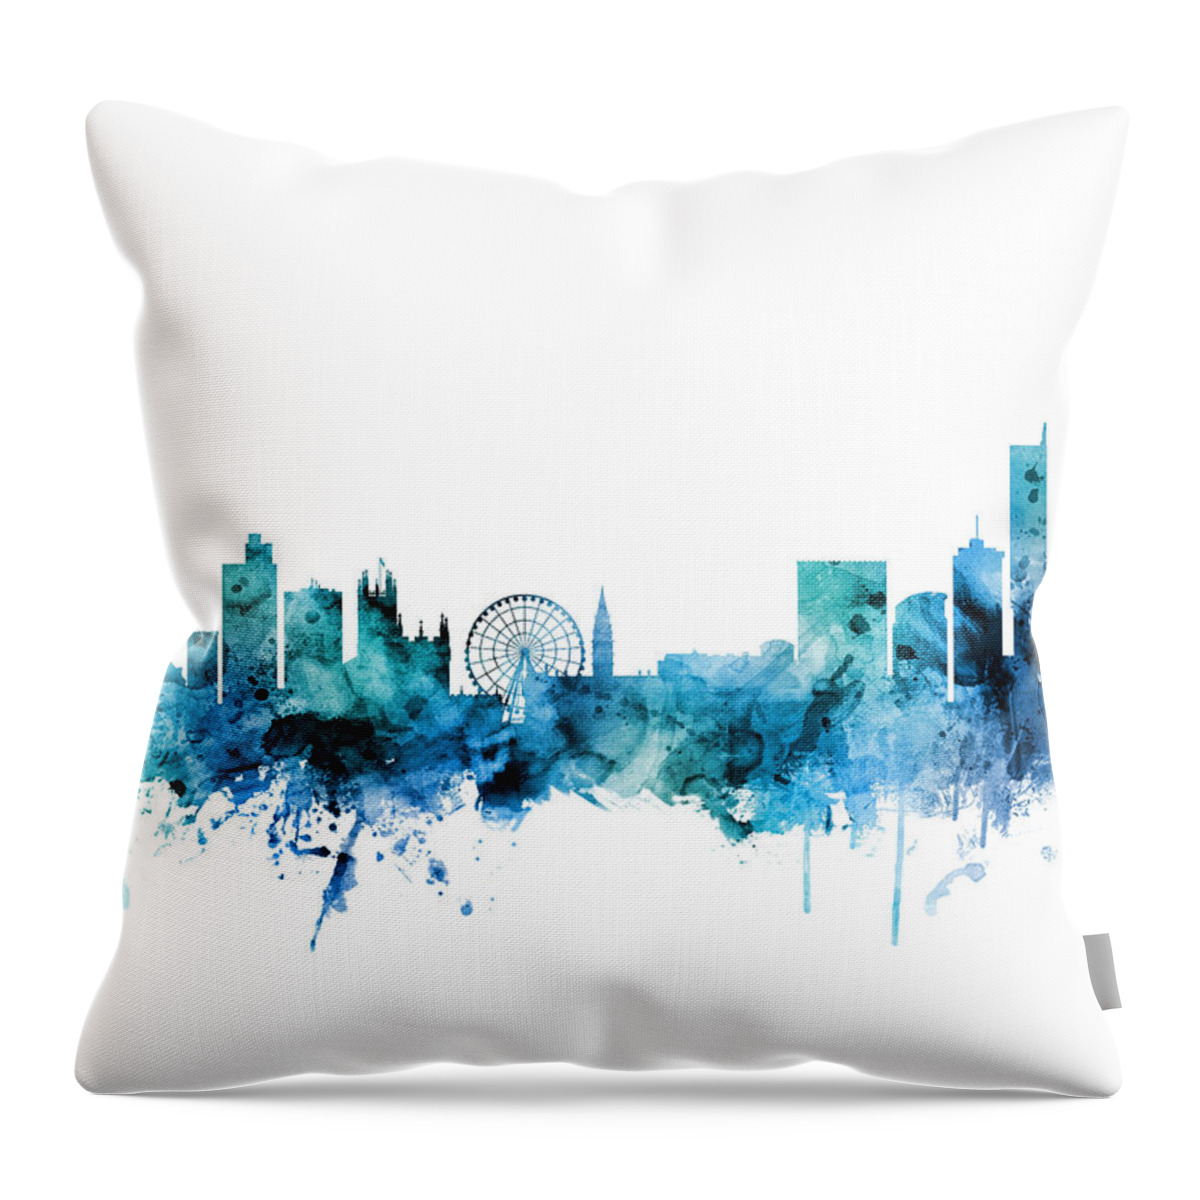 Manchester Throw Pillow featuring the digital art Manchester England Skyline by Michael Tompsett